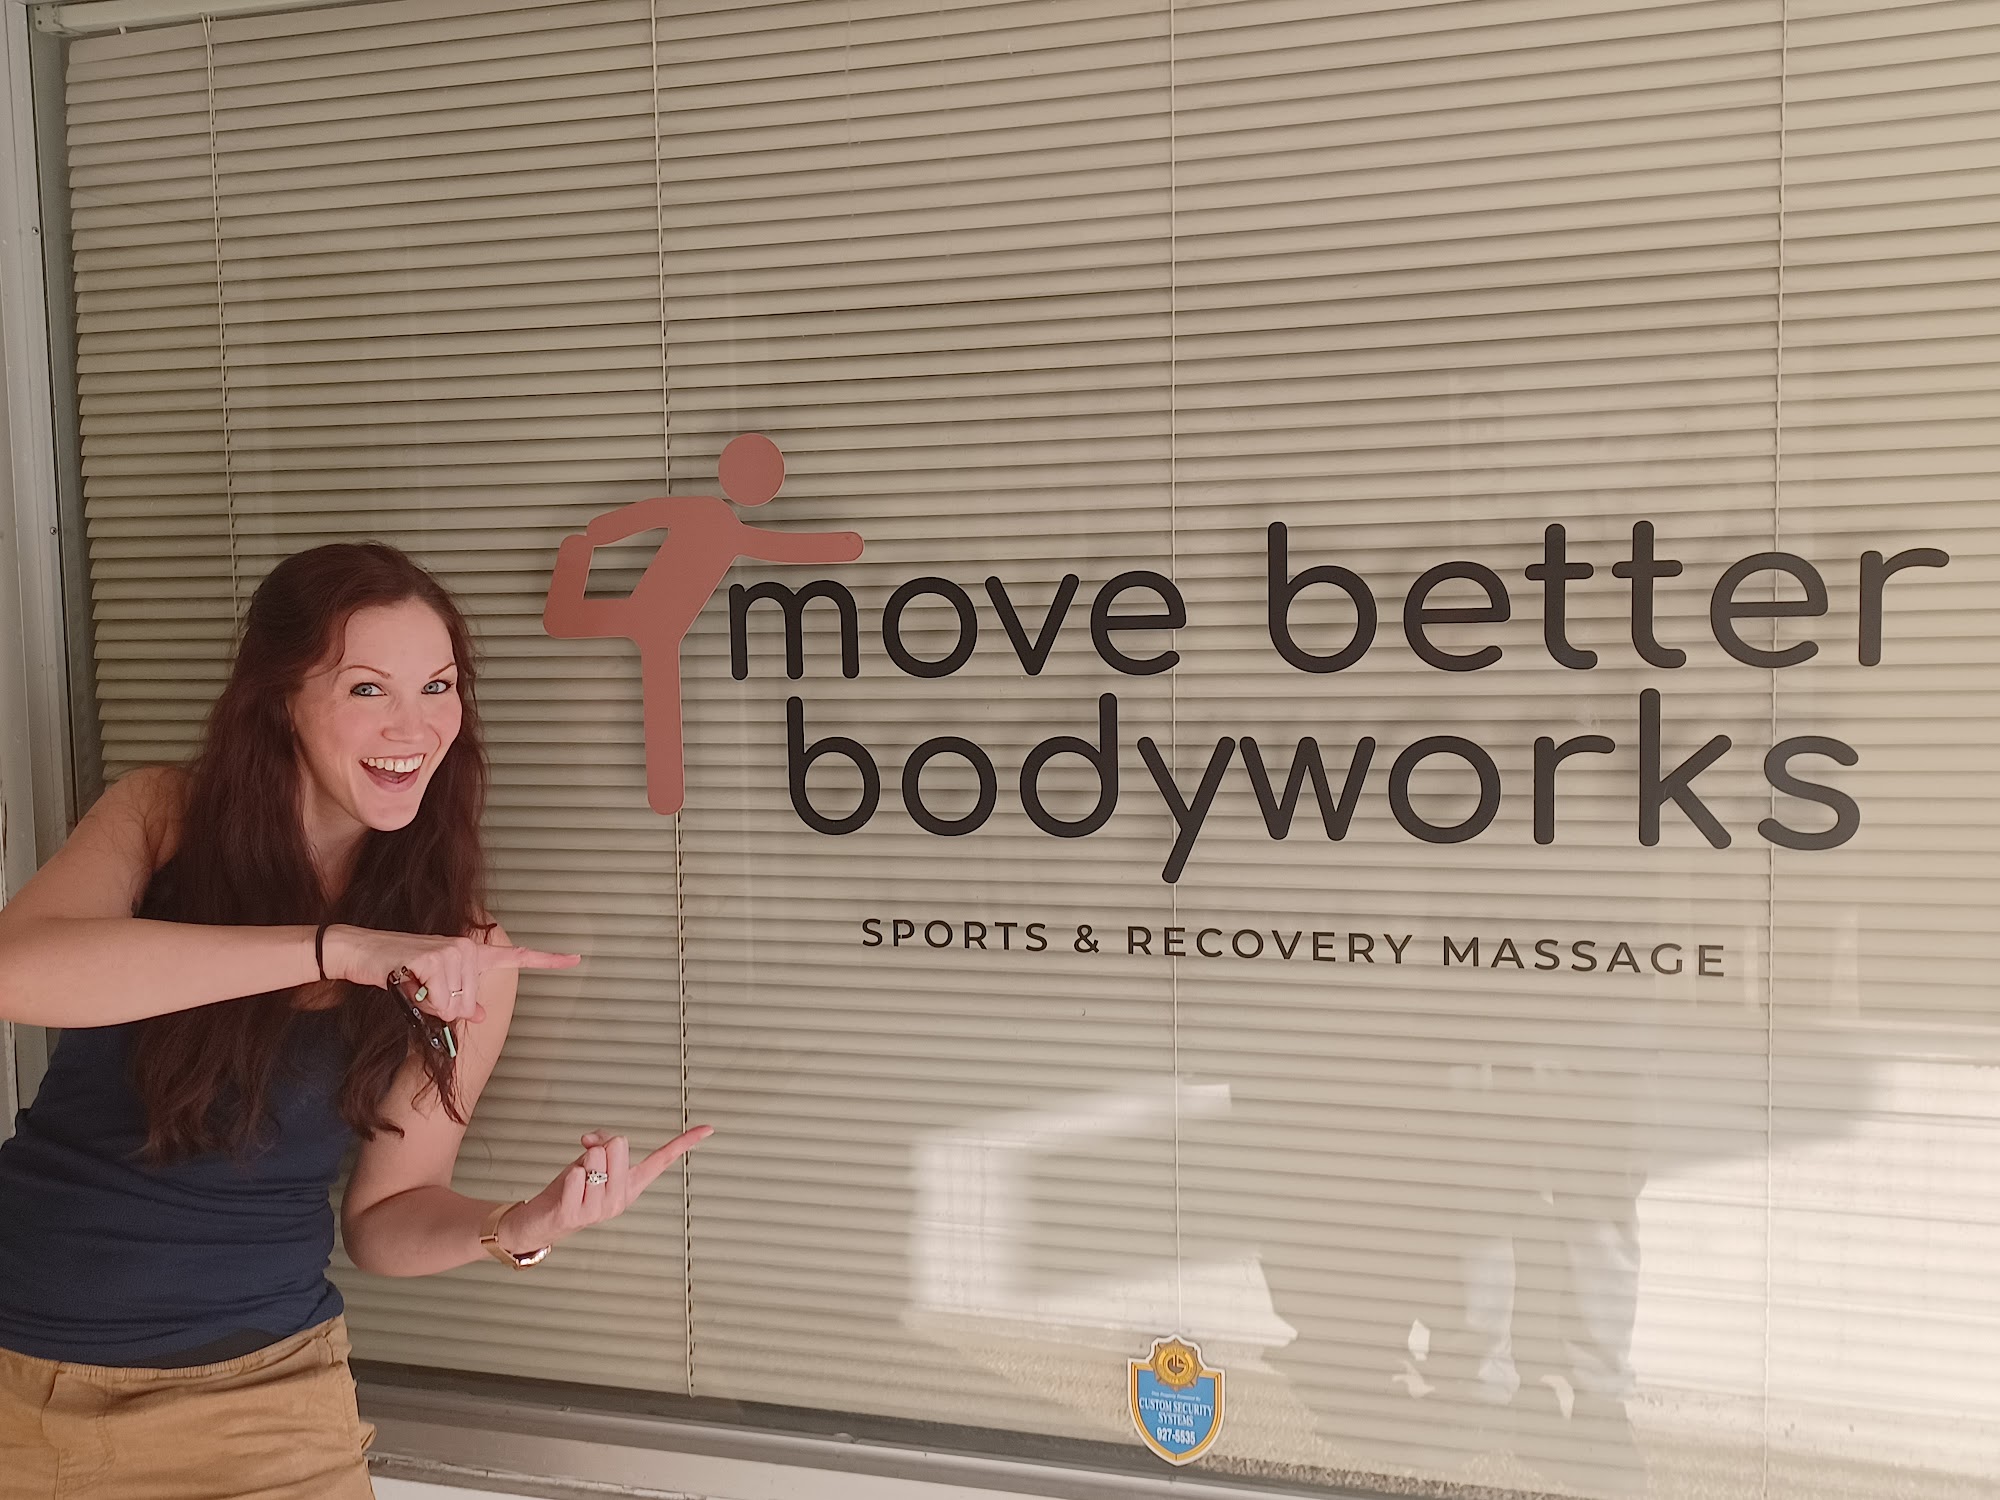 Move Better Bodyworks